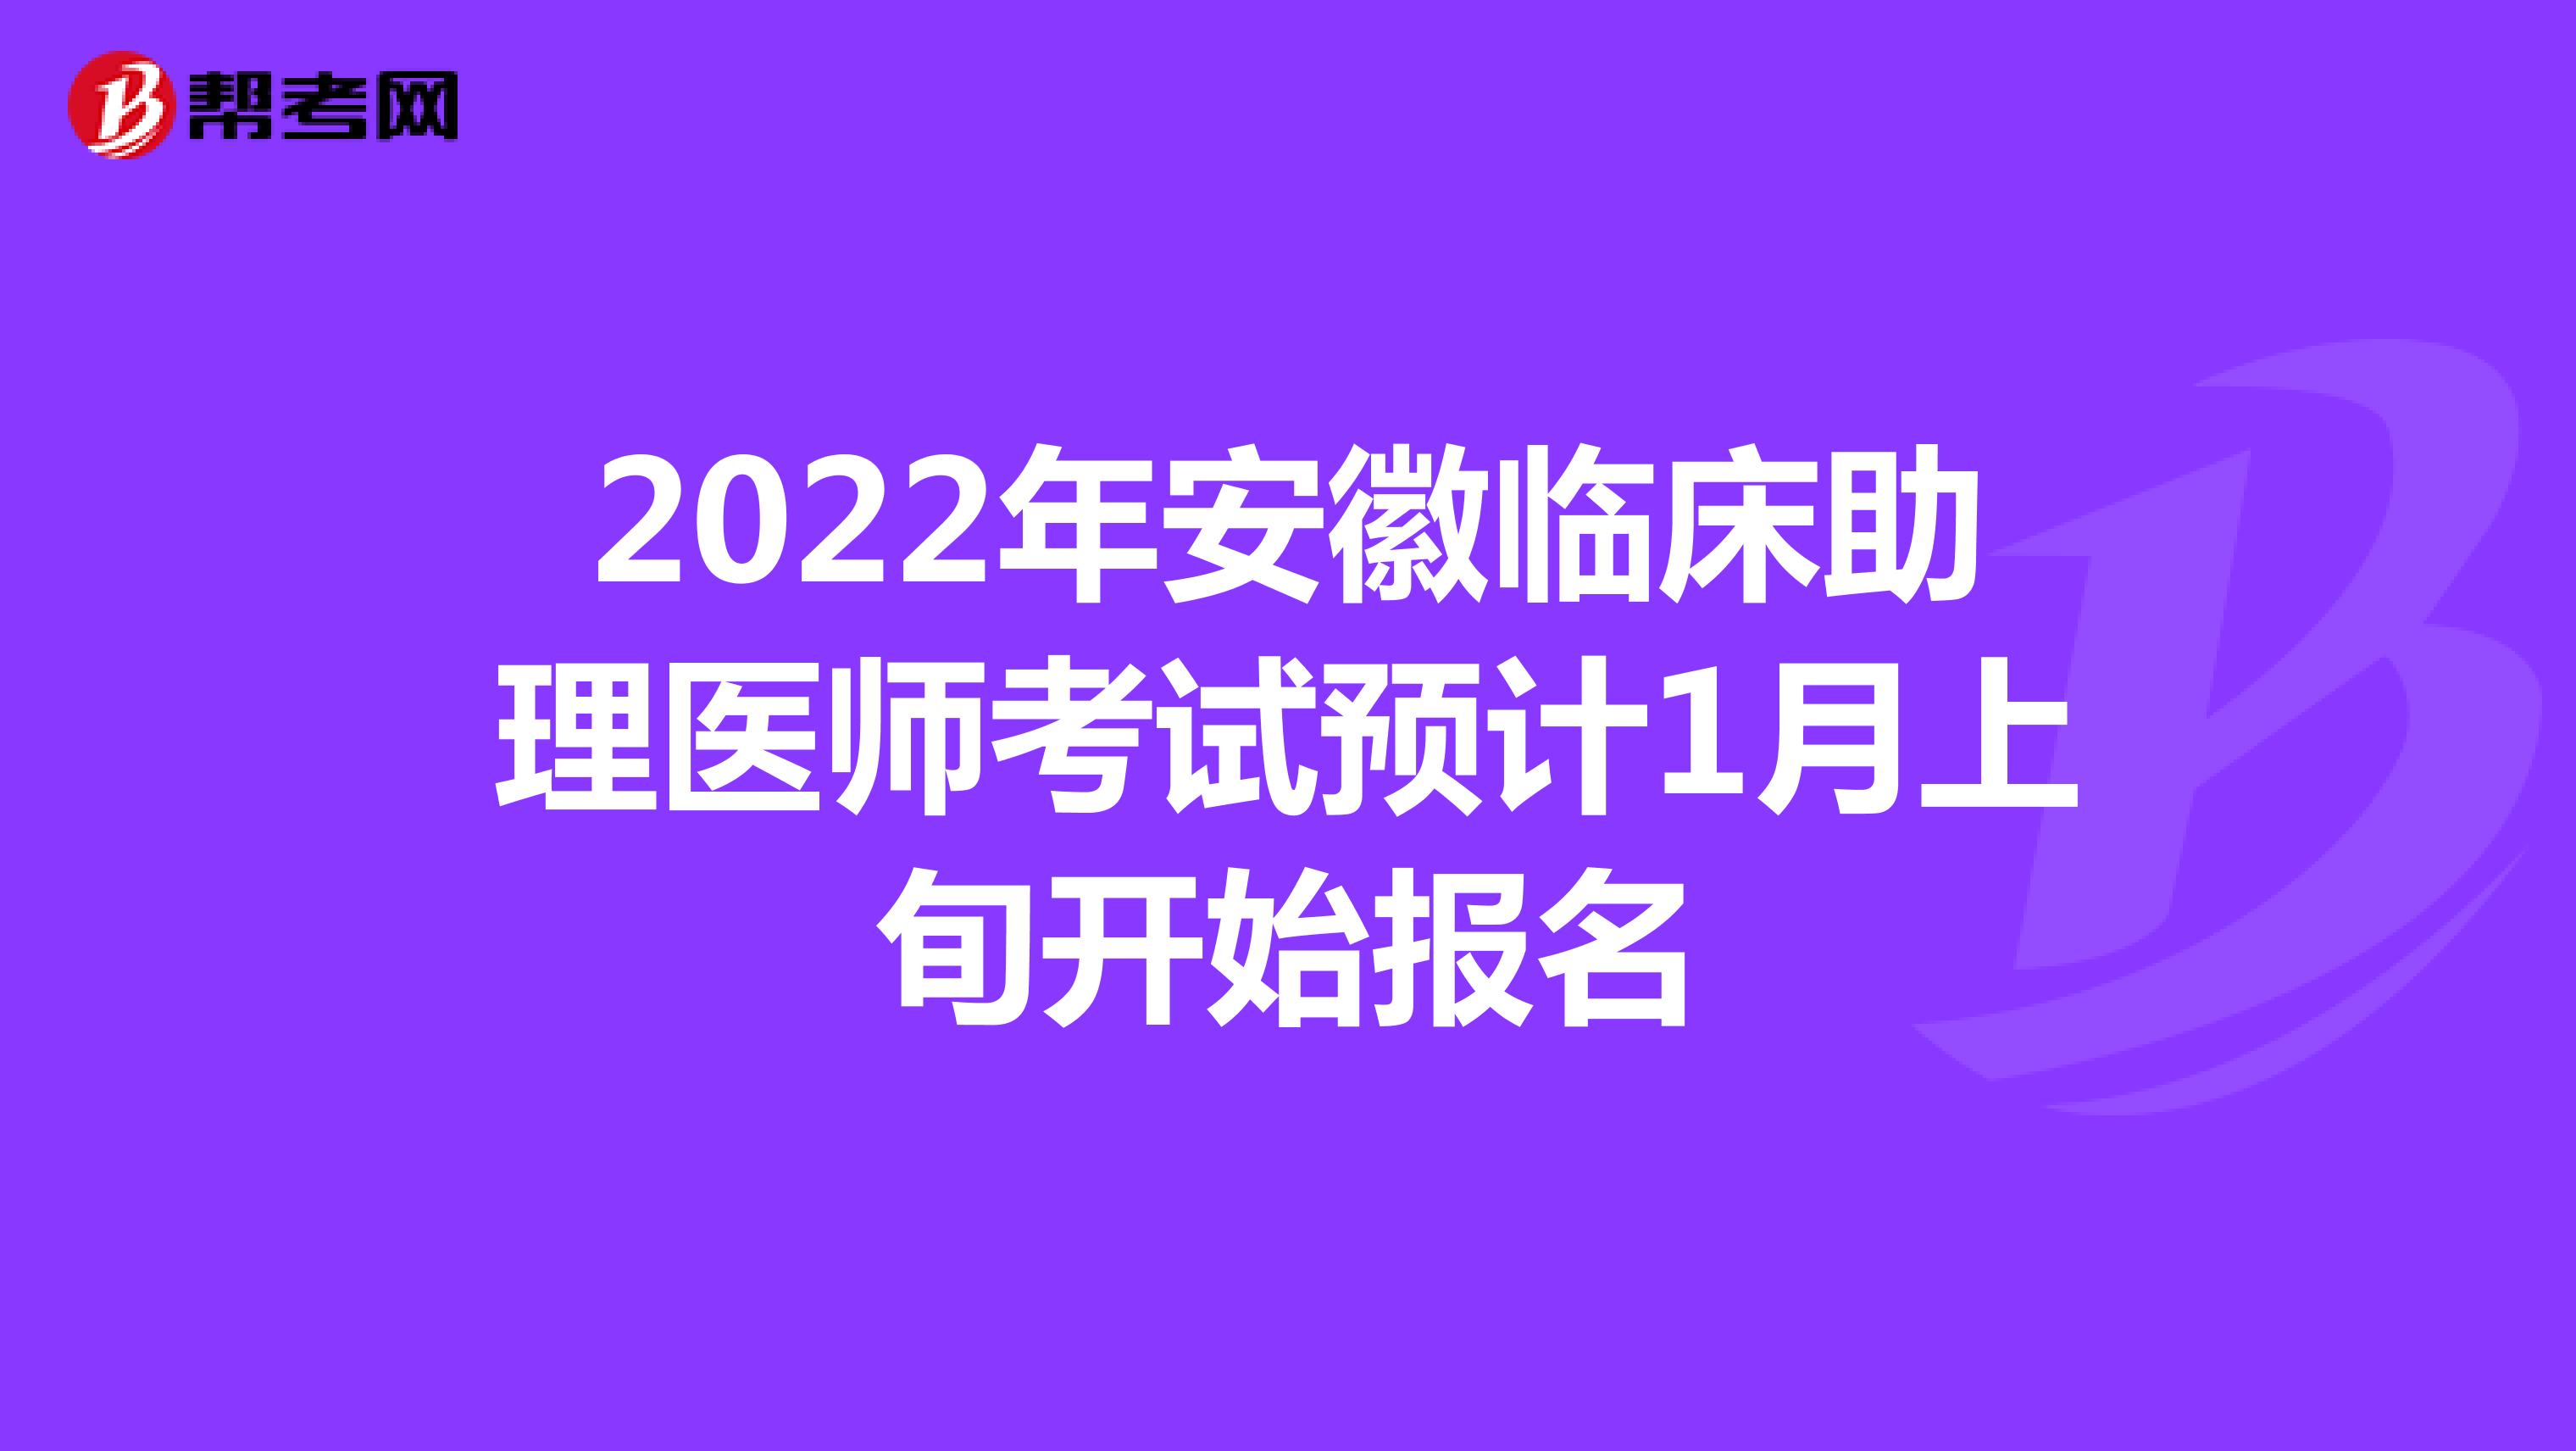 2022年安徽临床助理医师考试预计1月上旬开始报名